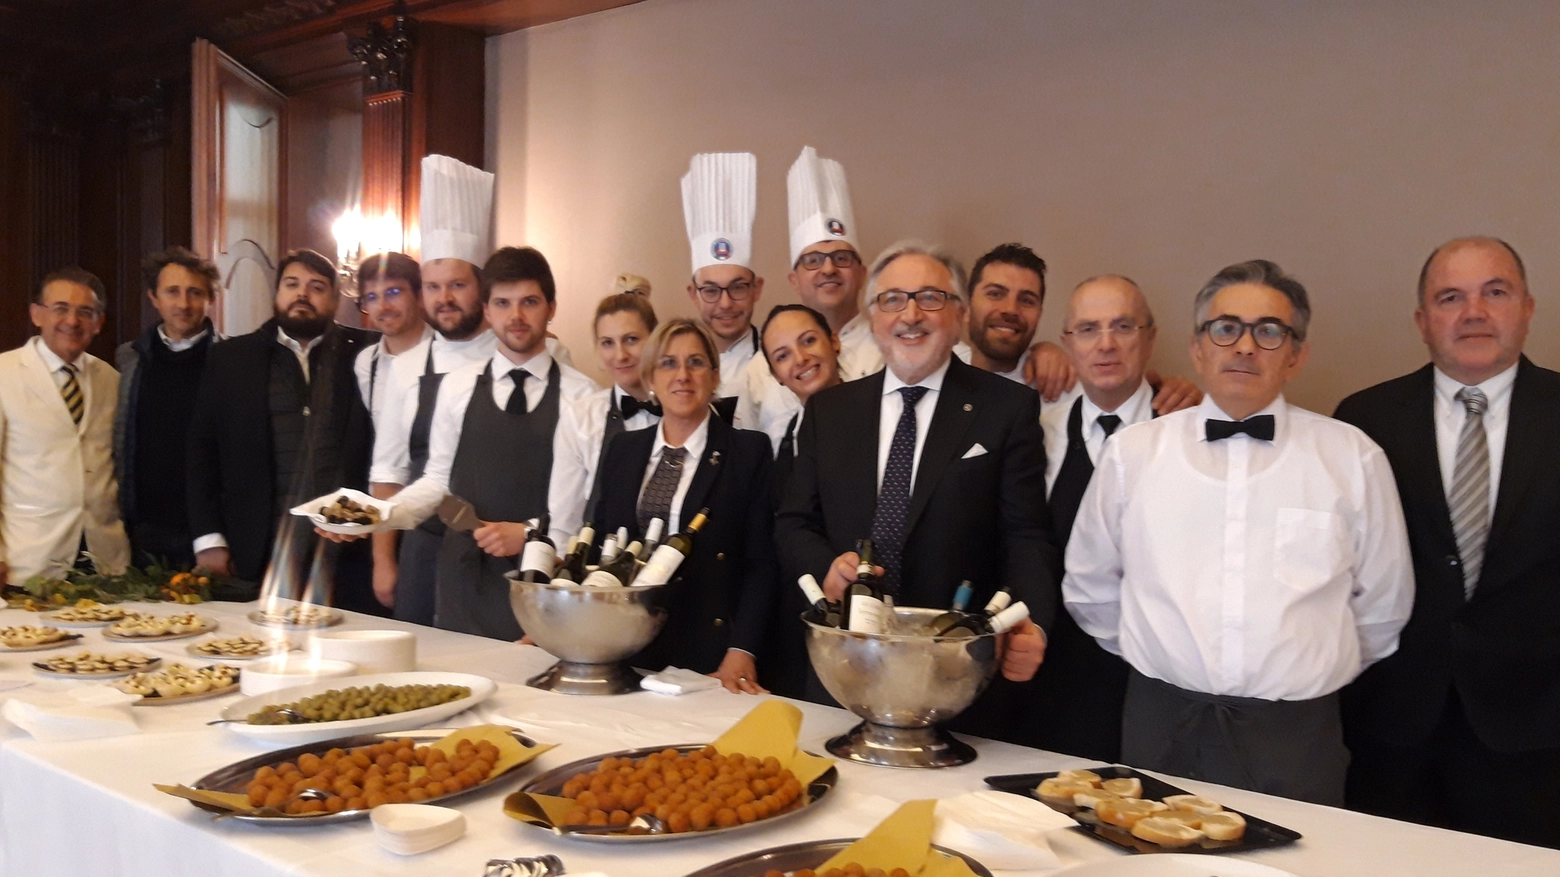 Il paniere Marche con presidi Slow Food, vini, Rossini Bistrot e tartufo Acqualagna